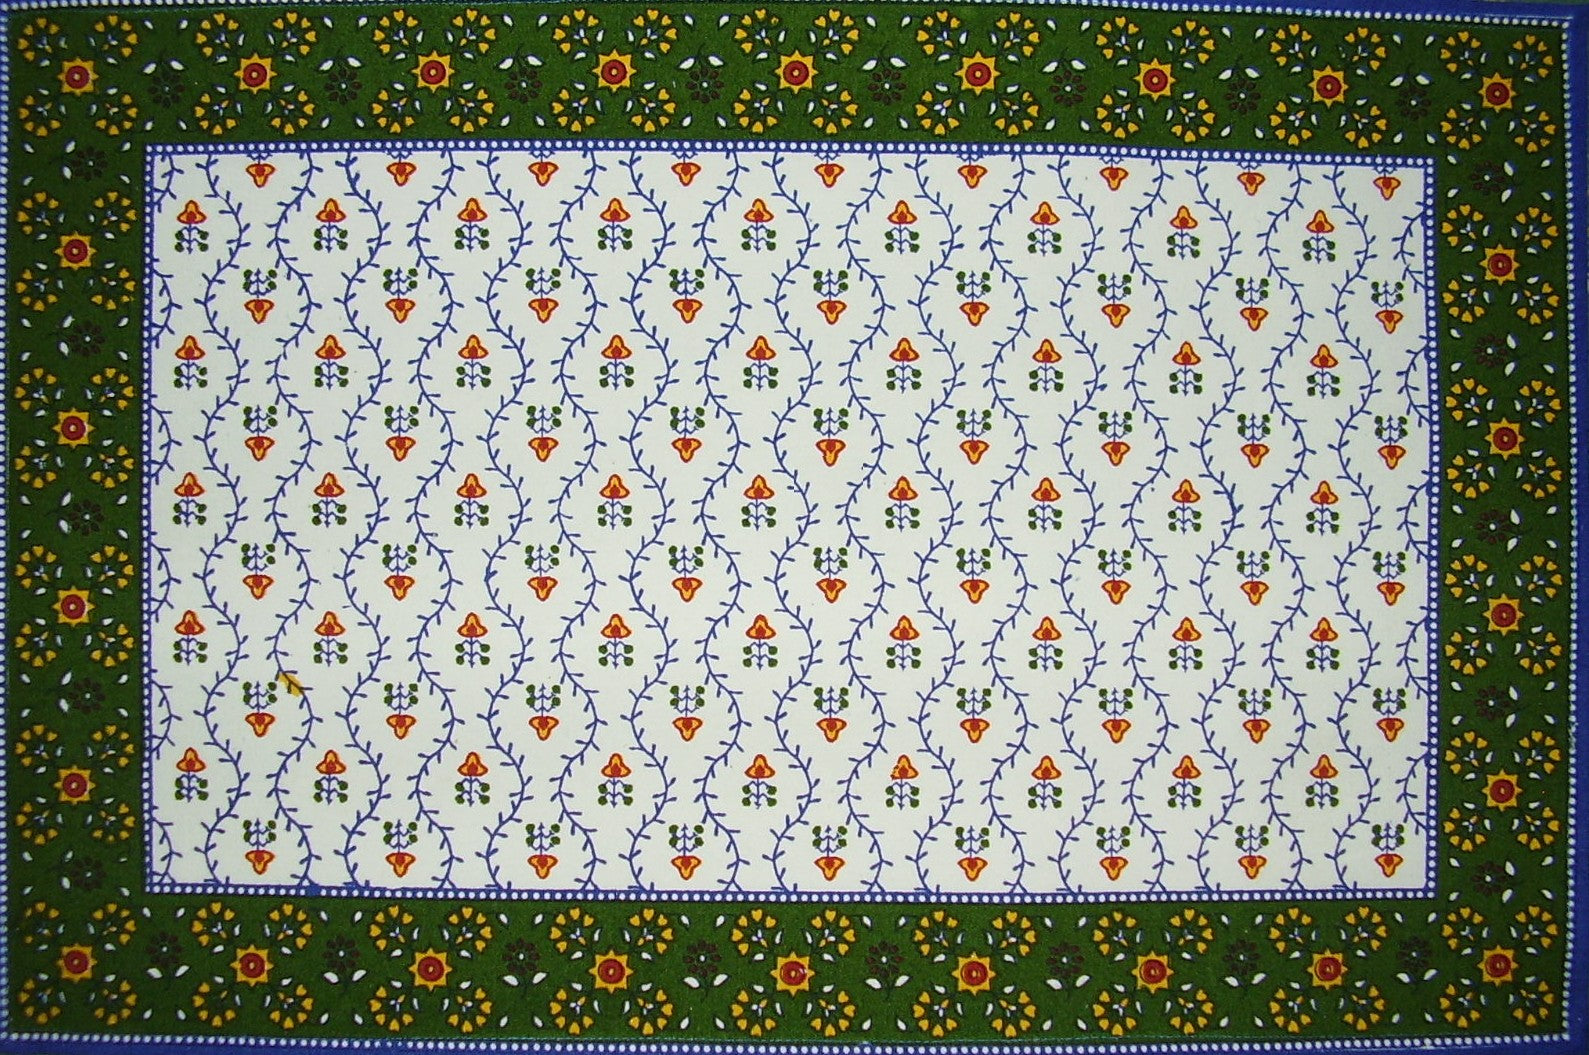 Buti Print Cotton Bord Dekkematte 19" x 13" Blå 